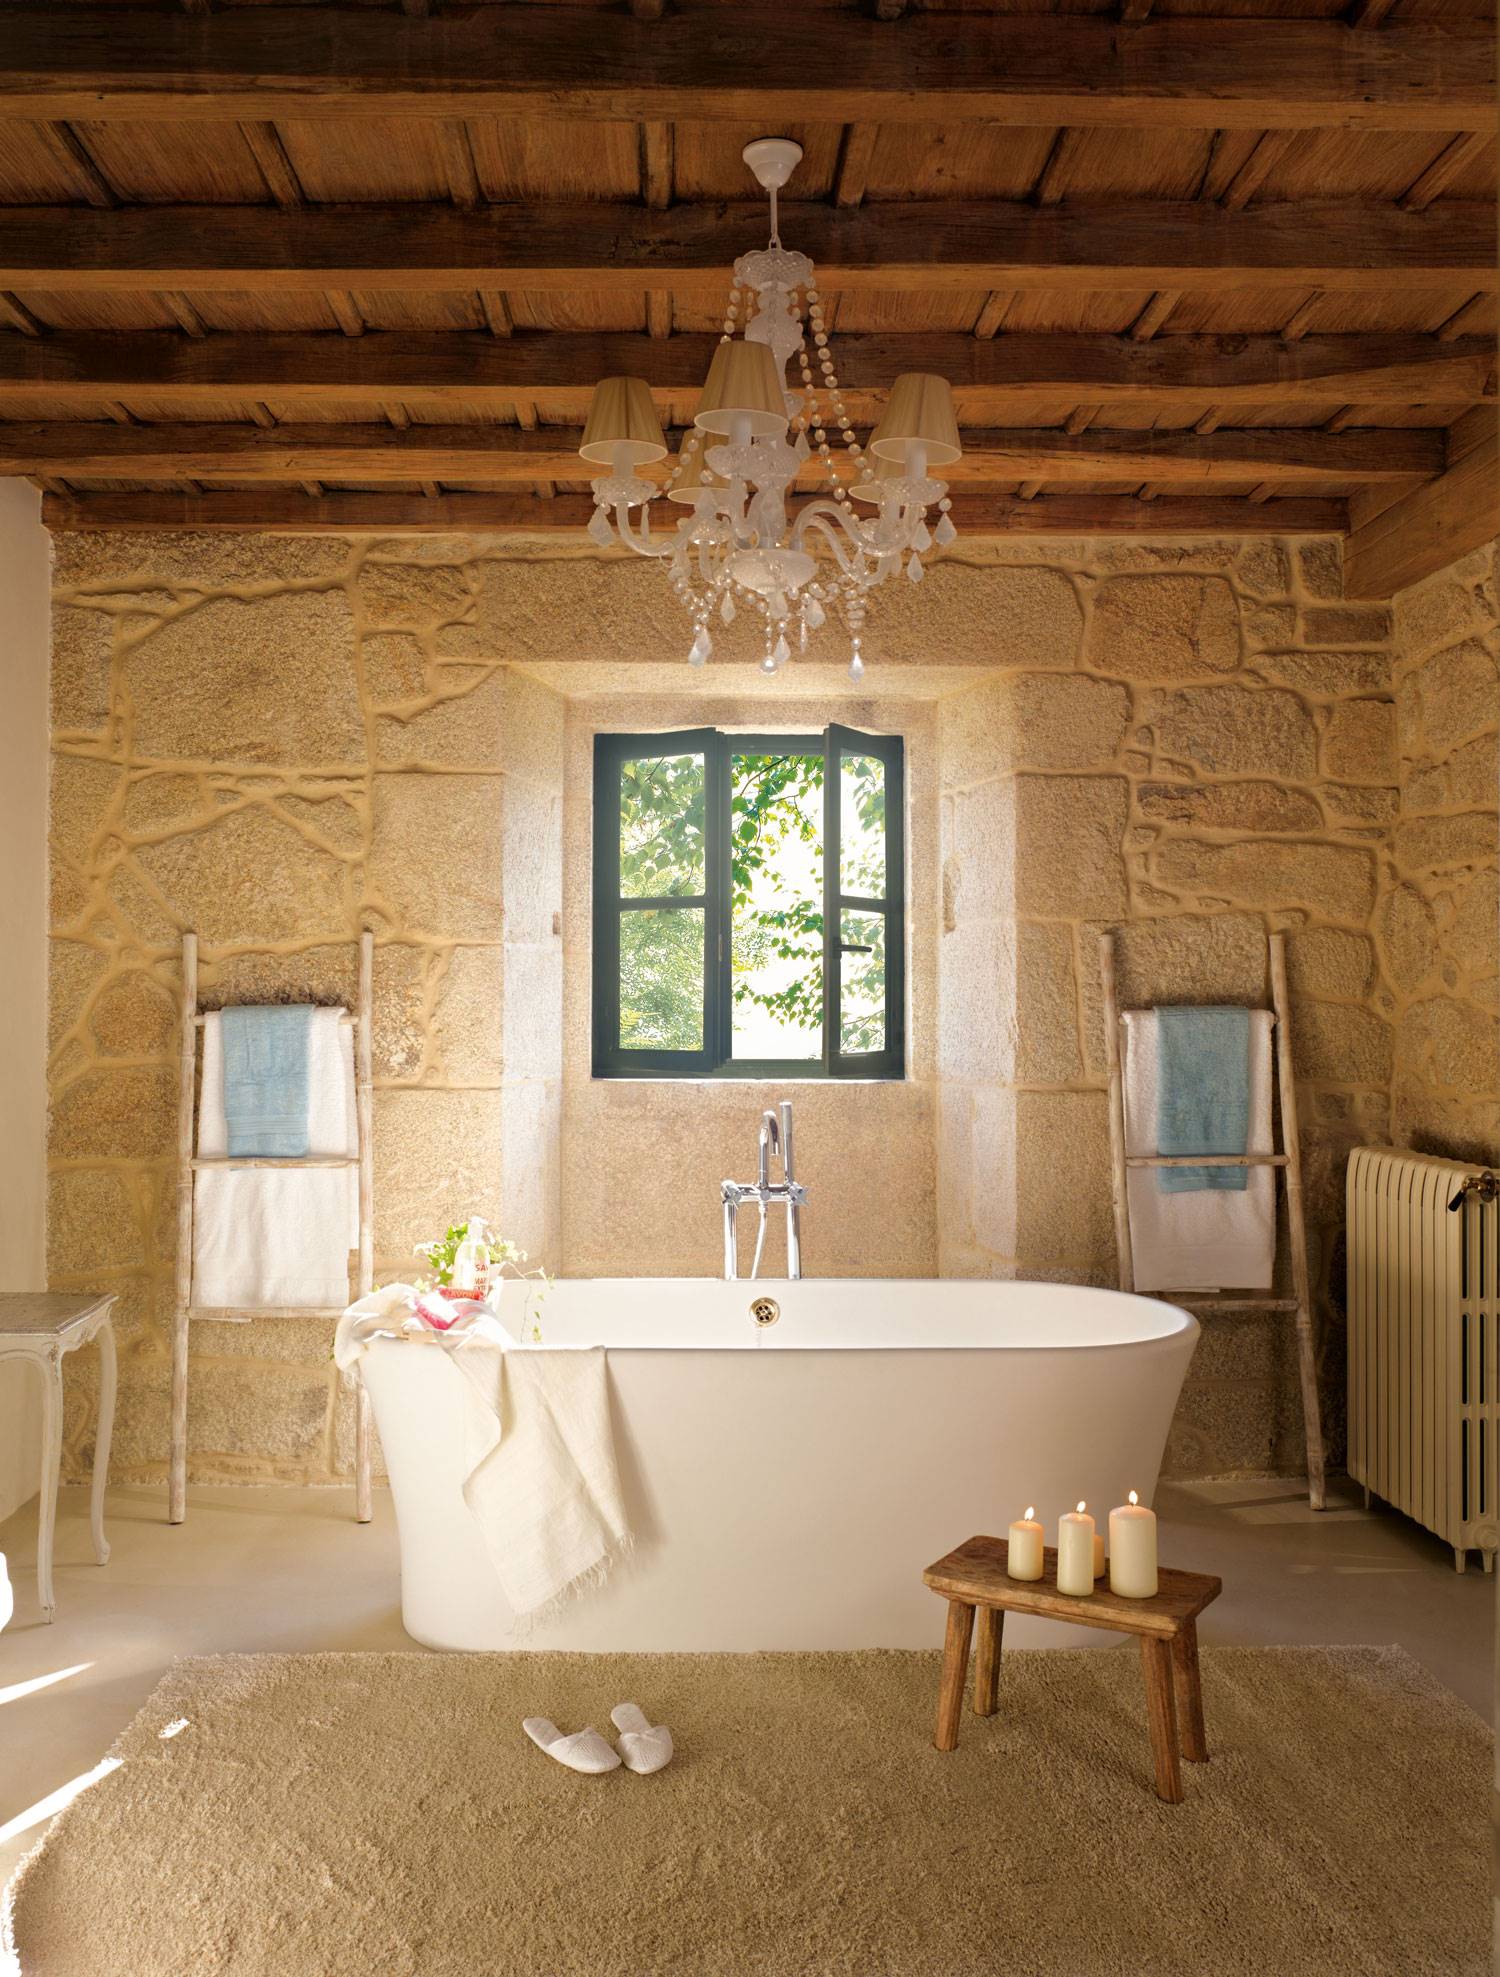 Baño rústico con paredes de piedra, lámpara de araña en el techo y bañera exenta.